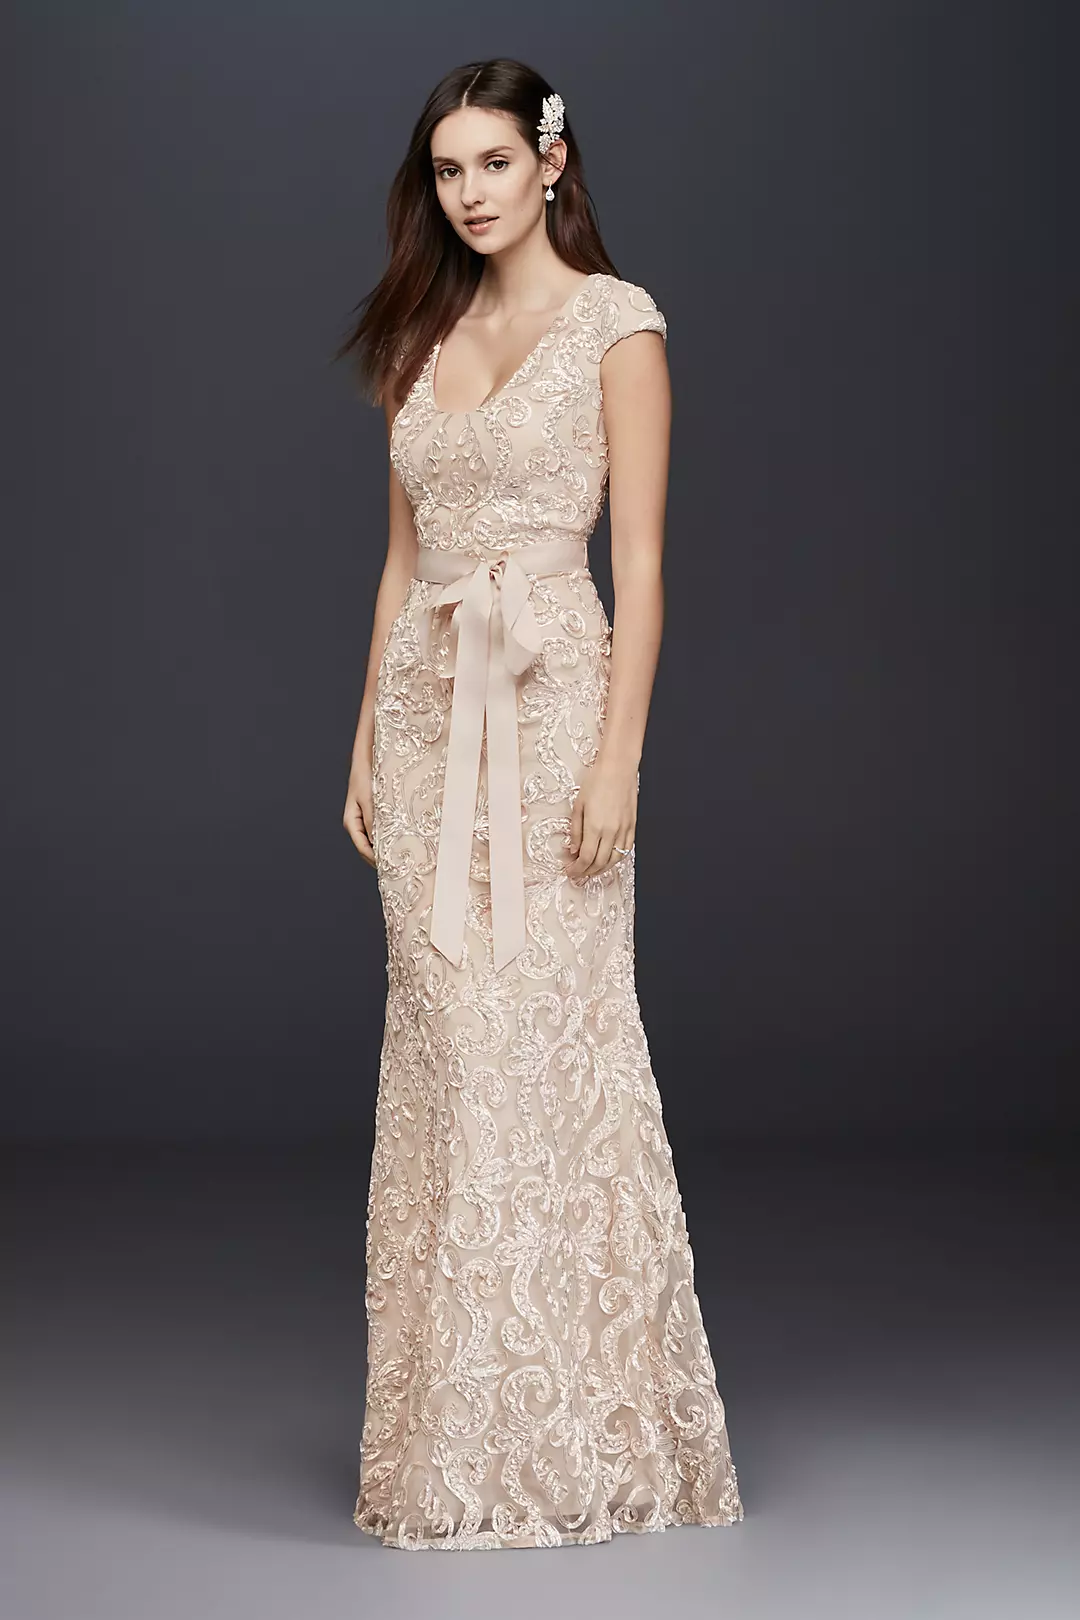 Cap Sleeve Soutache Lace Dress with Grosgrain Sash | David's Bridal